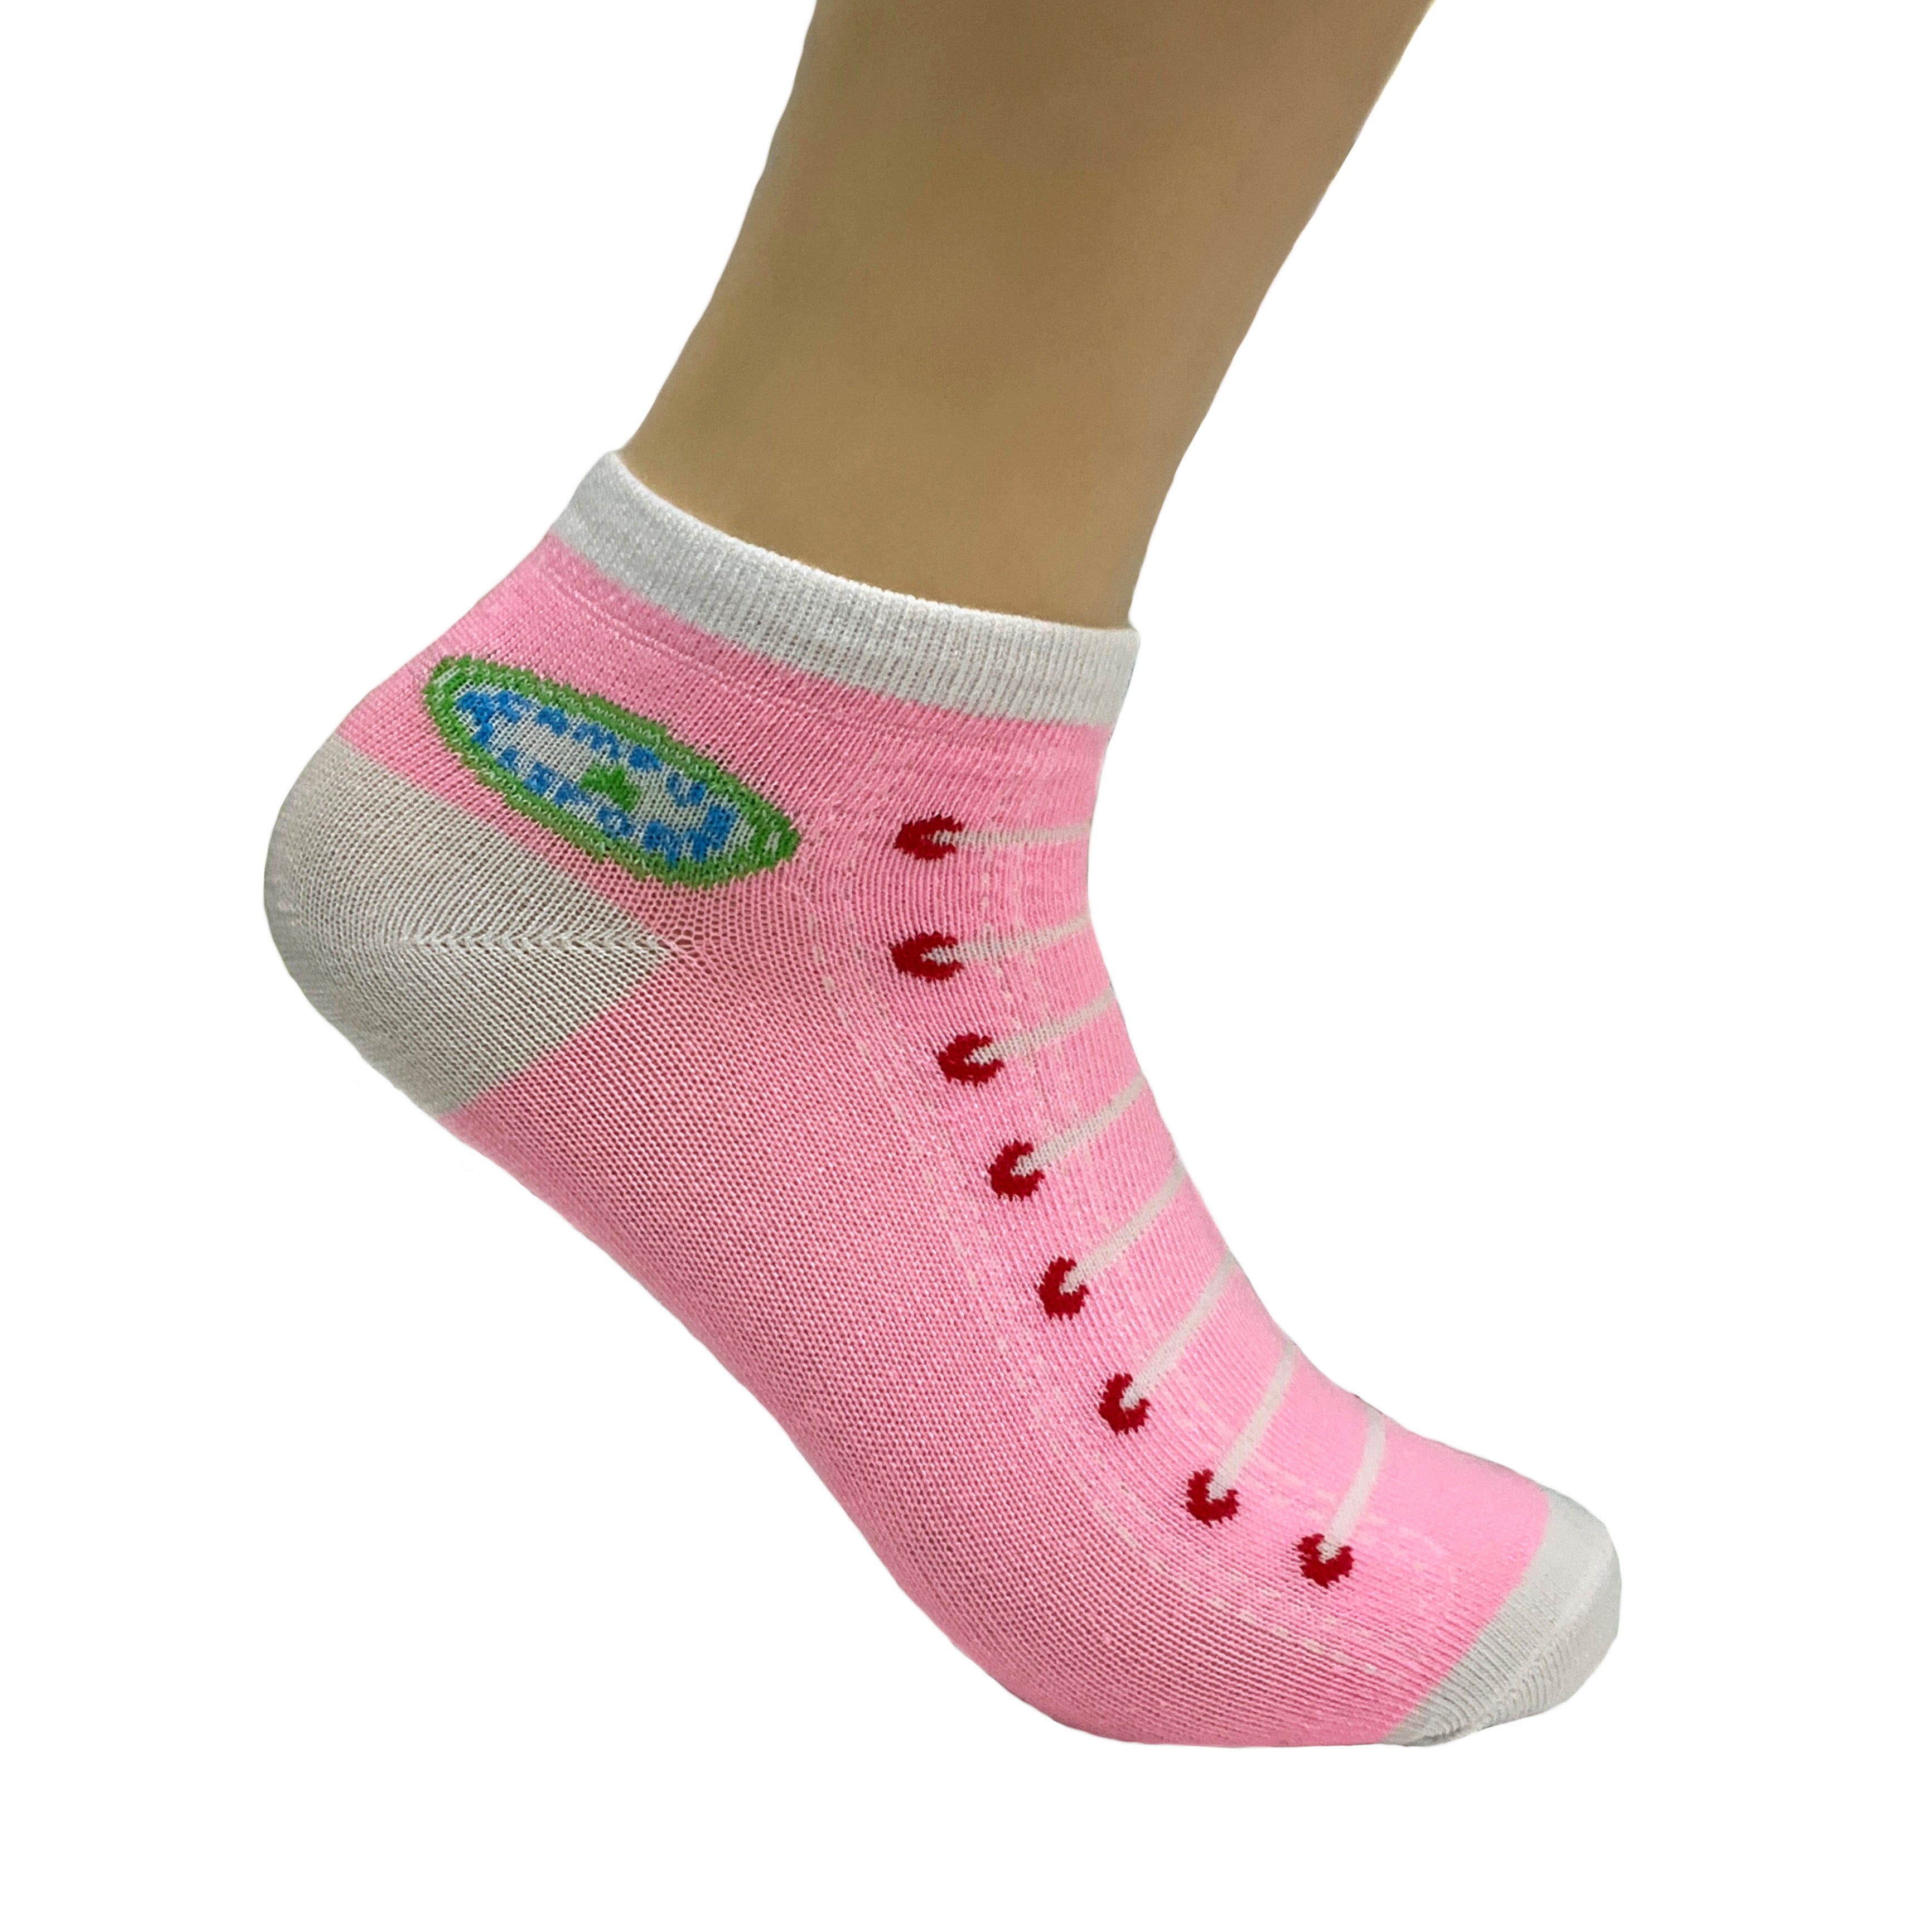 Pink Sneaker Pattern Ankle Socks (Adult Medium)